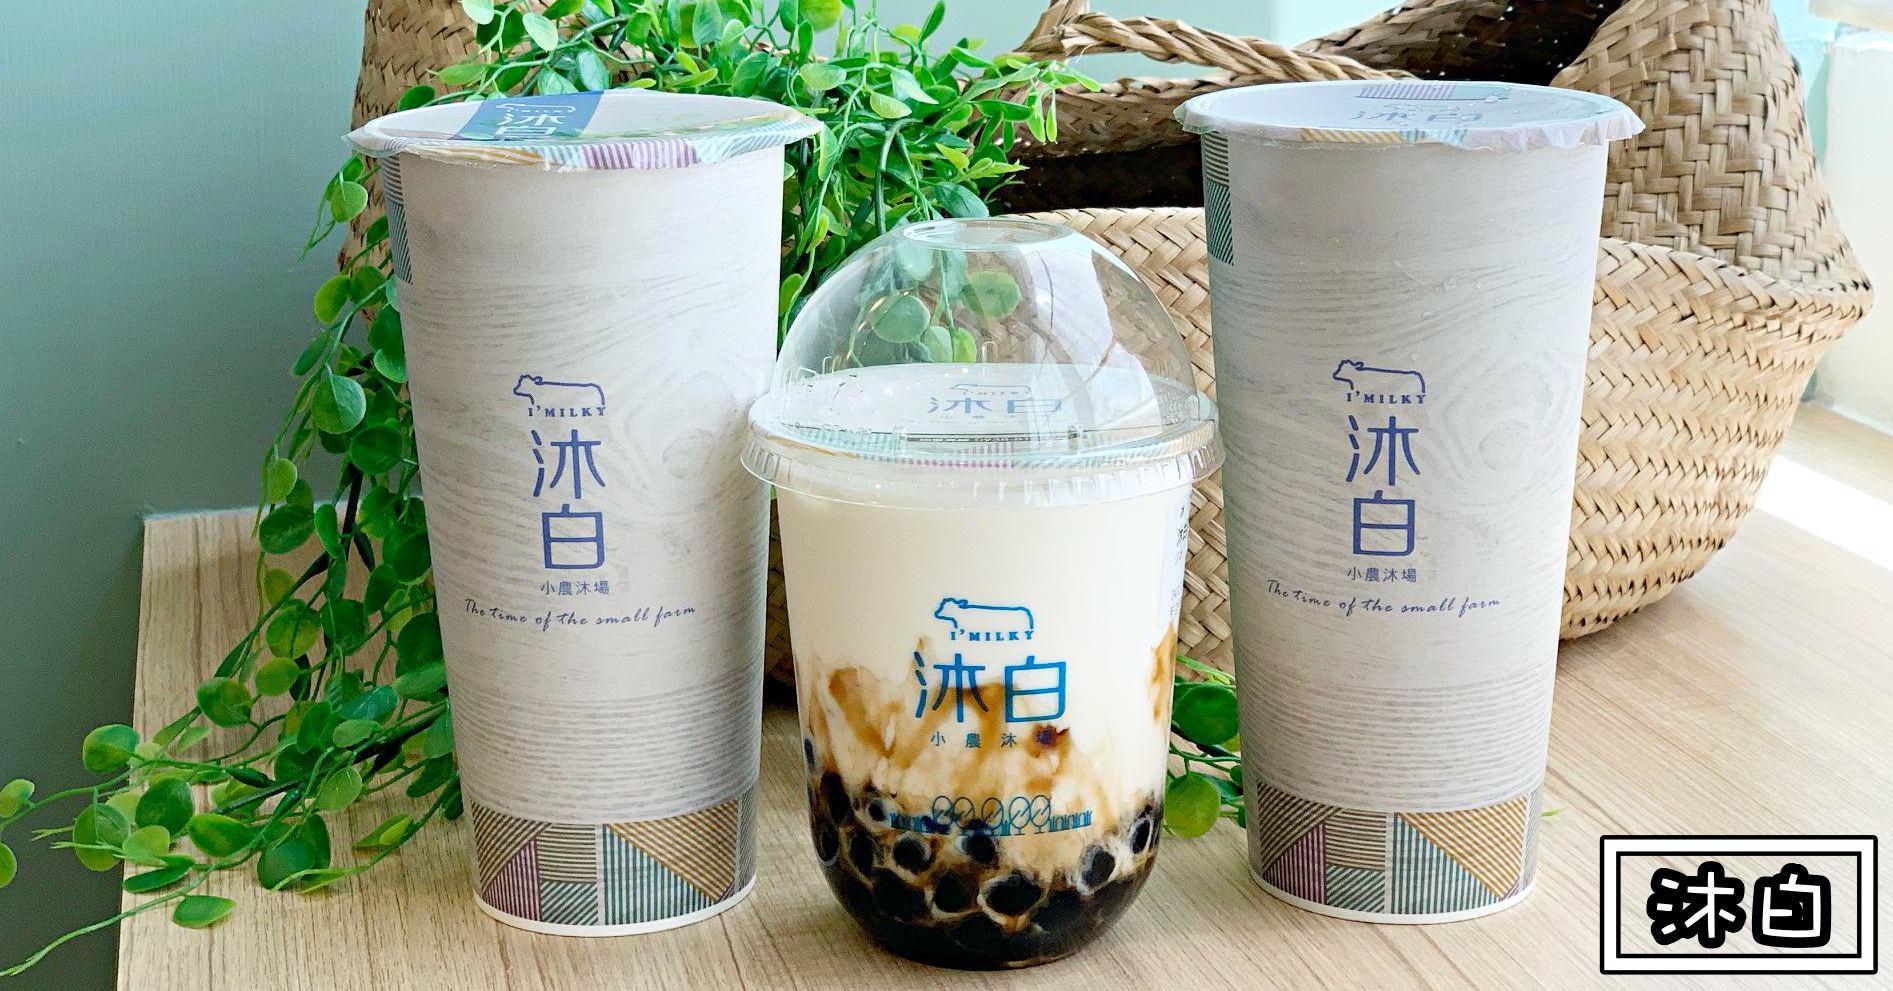 沐白小農沐場|大坪林飲料推薦-奶茶類真的不錯 純茶先PASS(菜單價錢)